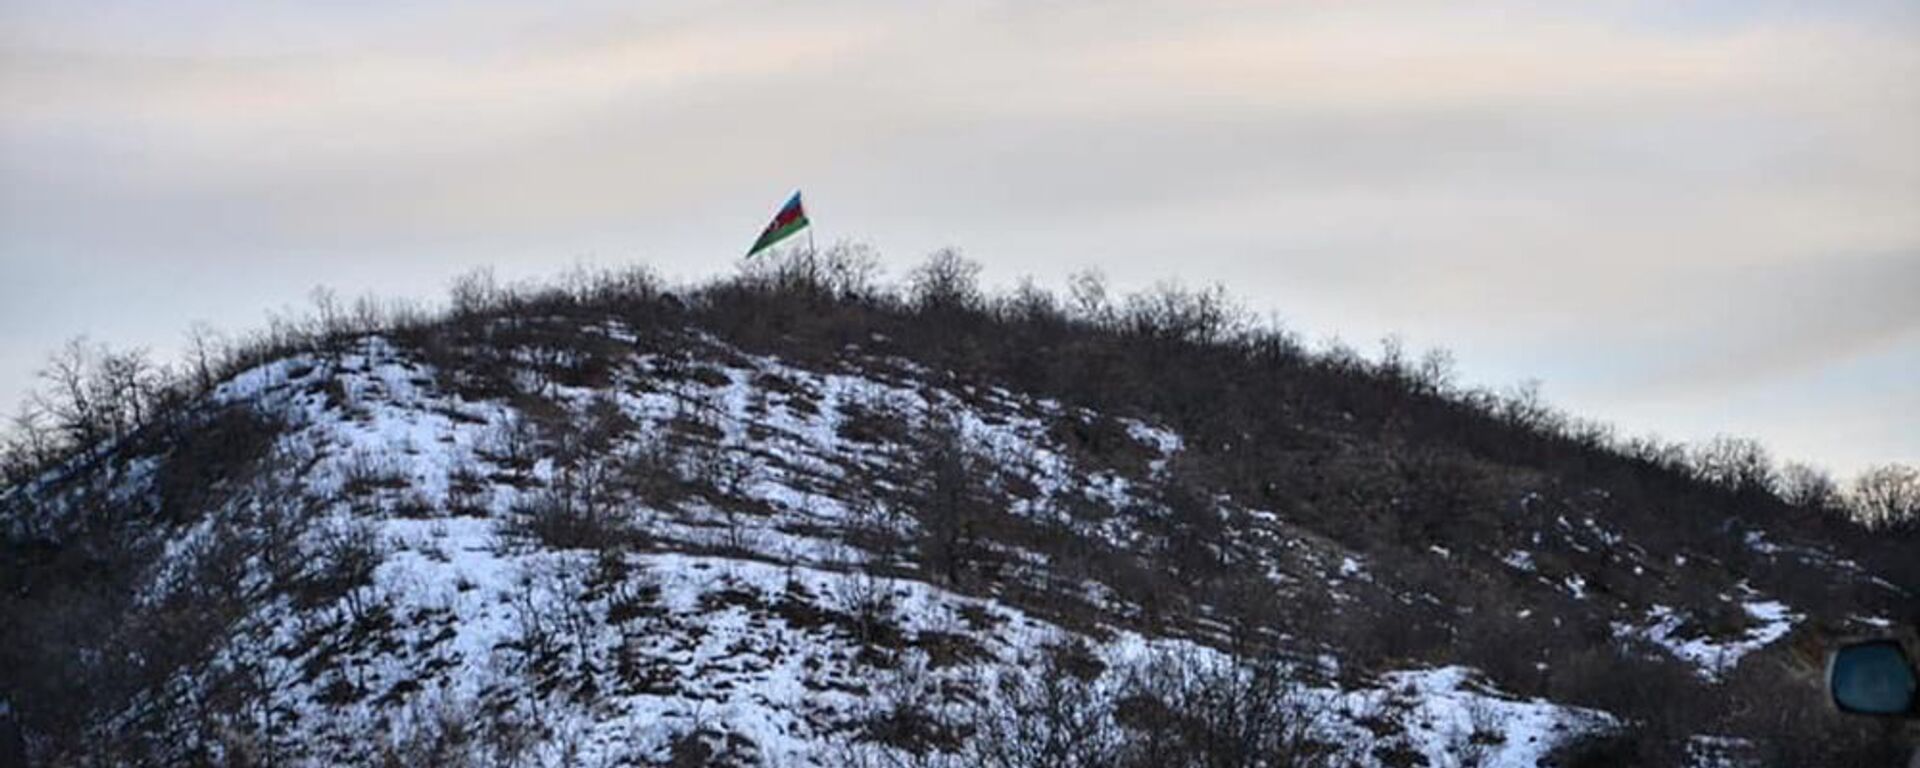 Флаг Азербайджана на дороге, ведущей из города Капана в село Чакатен (2 февраля 2021).  - Sputnik Արմենիա, 1920, 11.11.2021